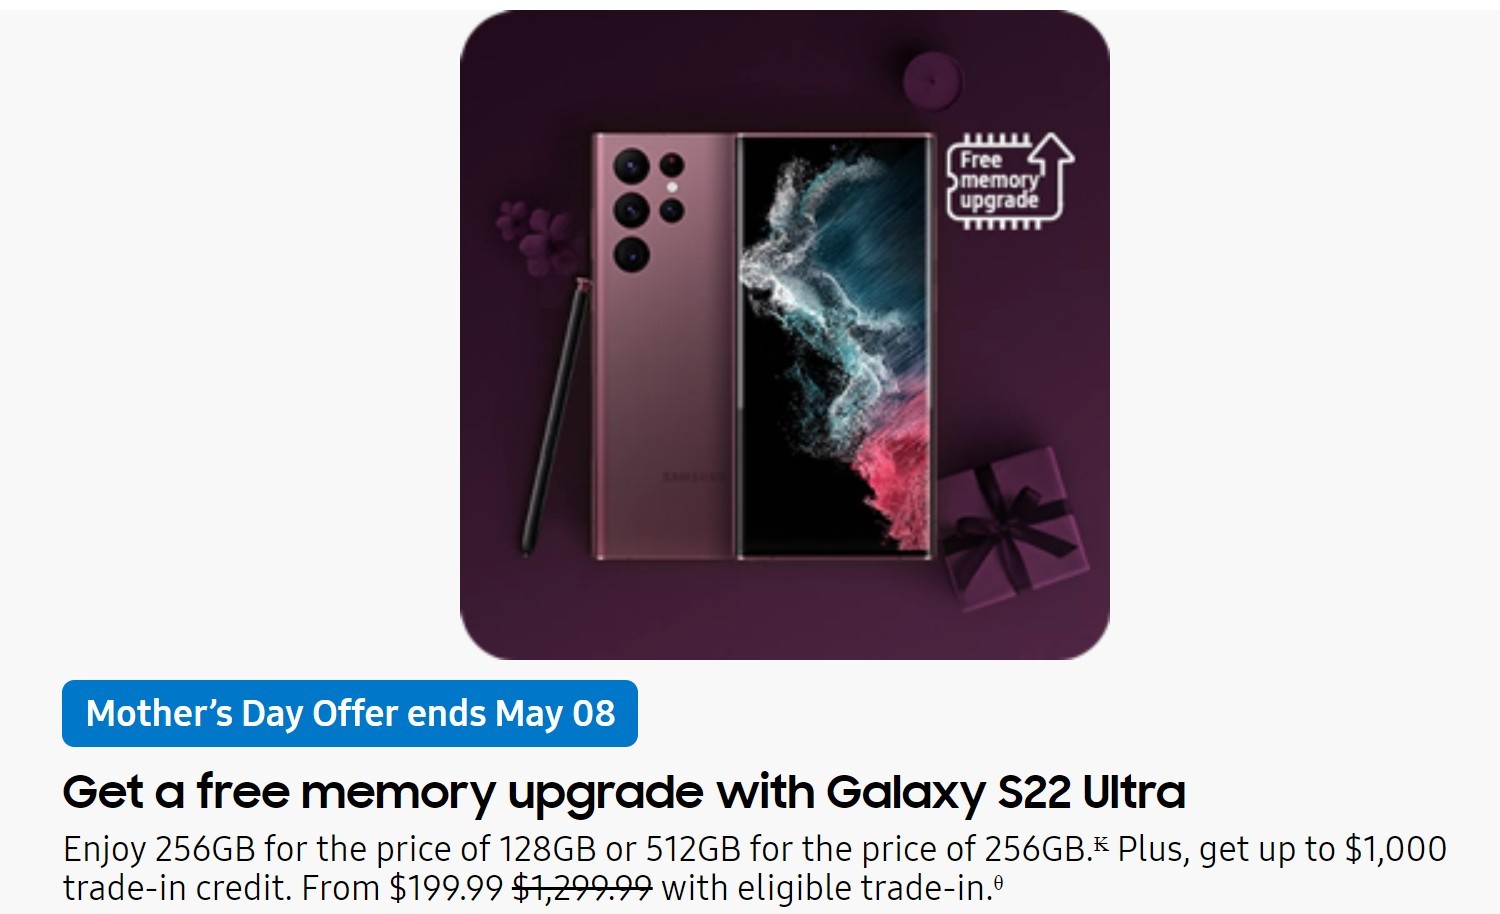 Penawaran Samsung USA Mother's Day kalebu upgrade memori gratis, Galaxy Buds, lan Watches